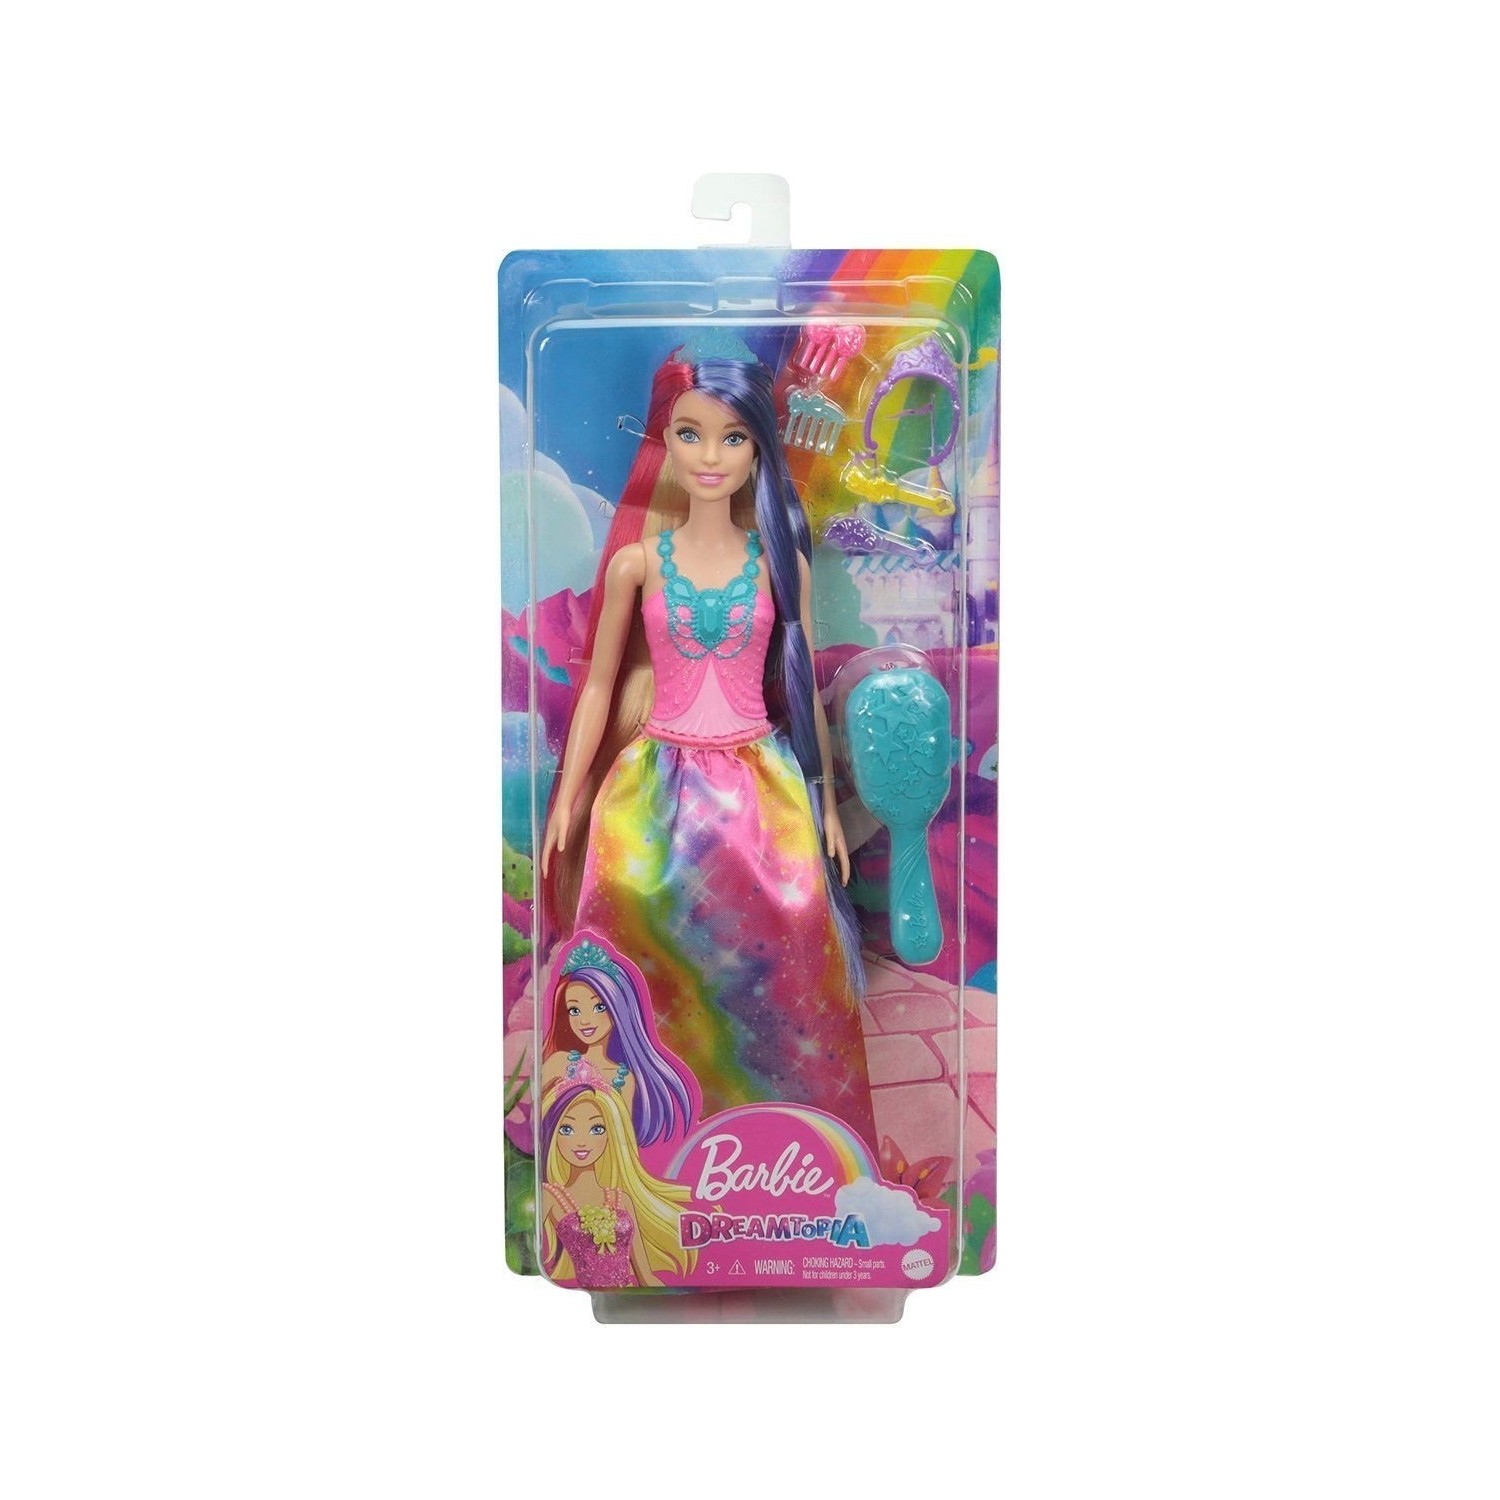 Кукла Barbie Dreamtopia Long Haired Dolls GTF37 куклы barbie русалки dreamtopia hgr09